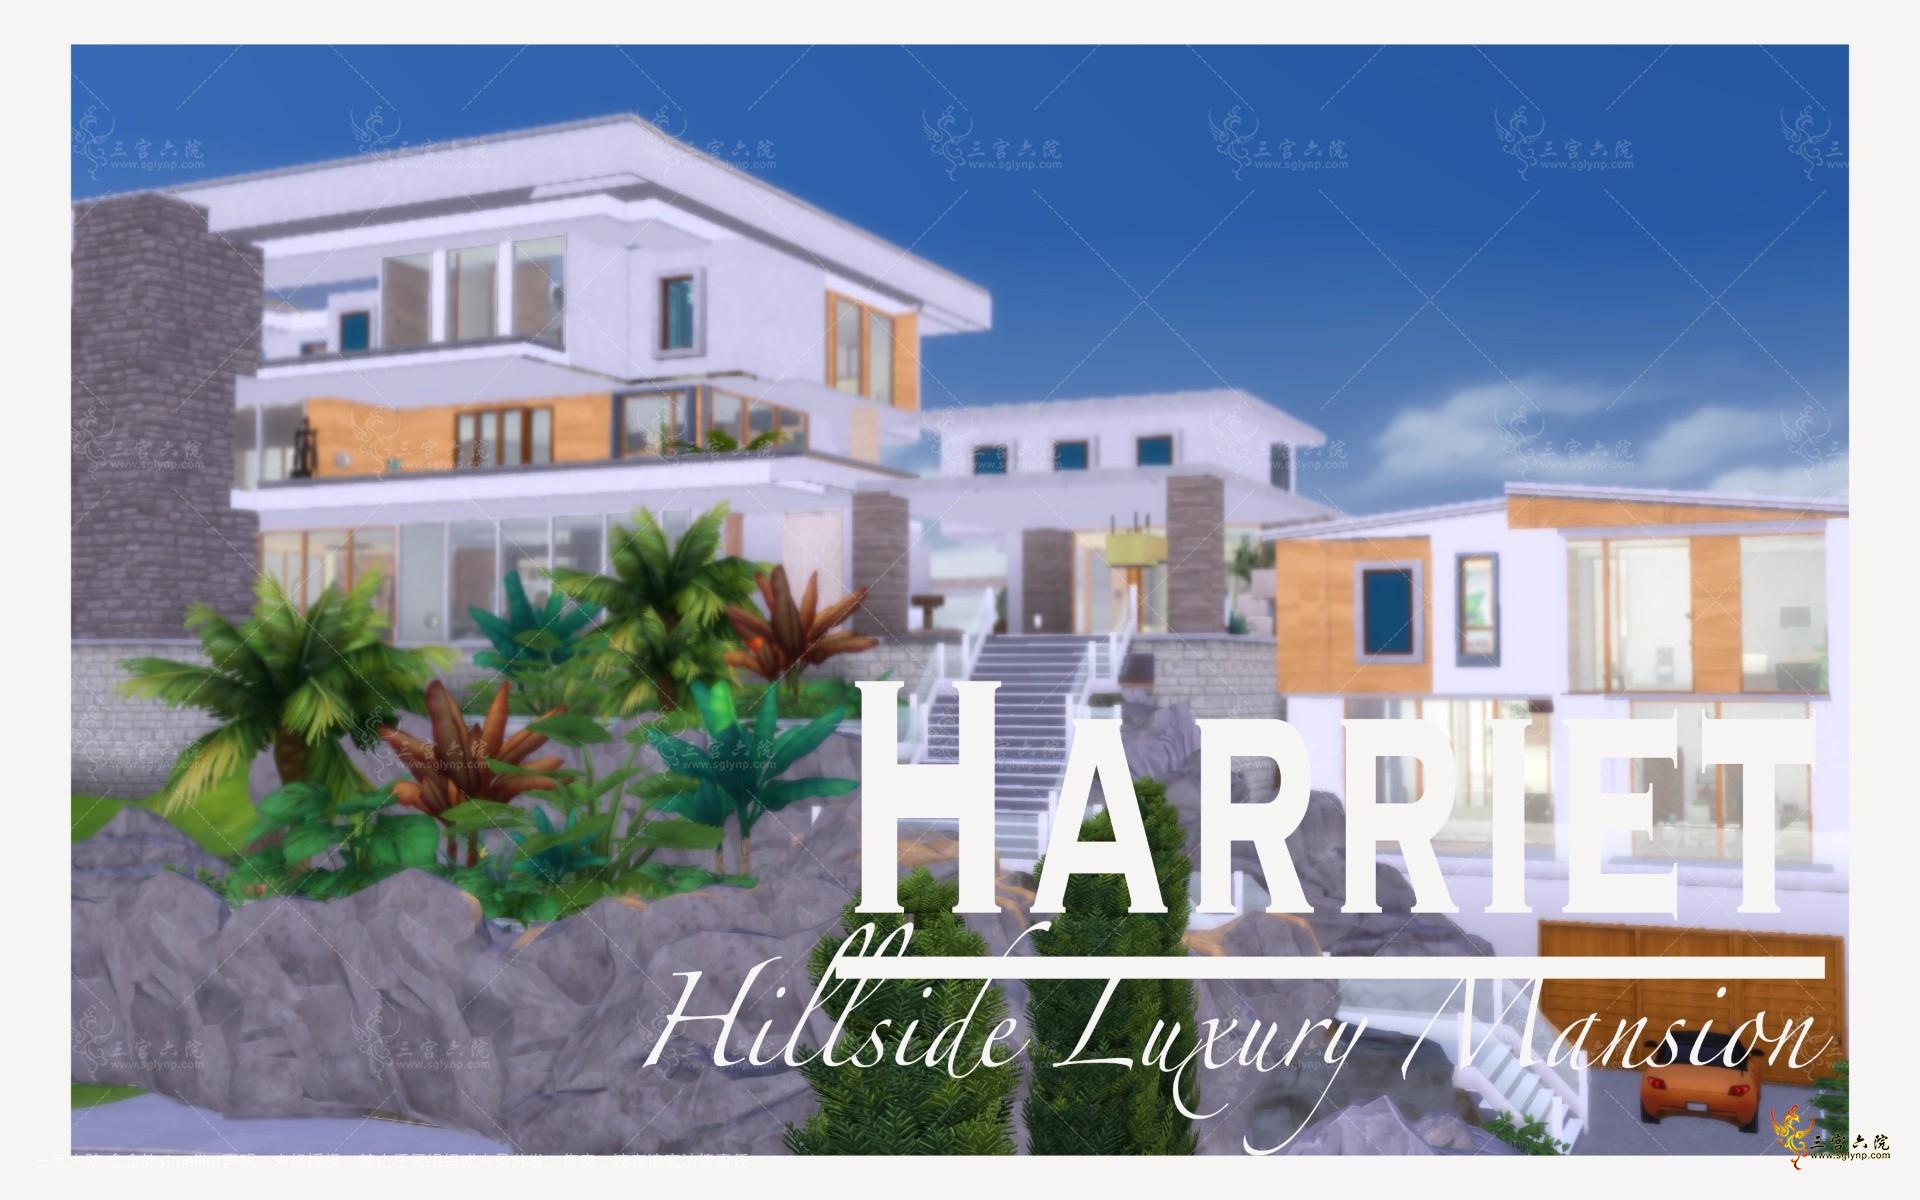 Harriet Hillside Luxury Modern Mansion.jpg